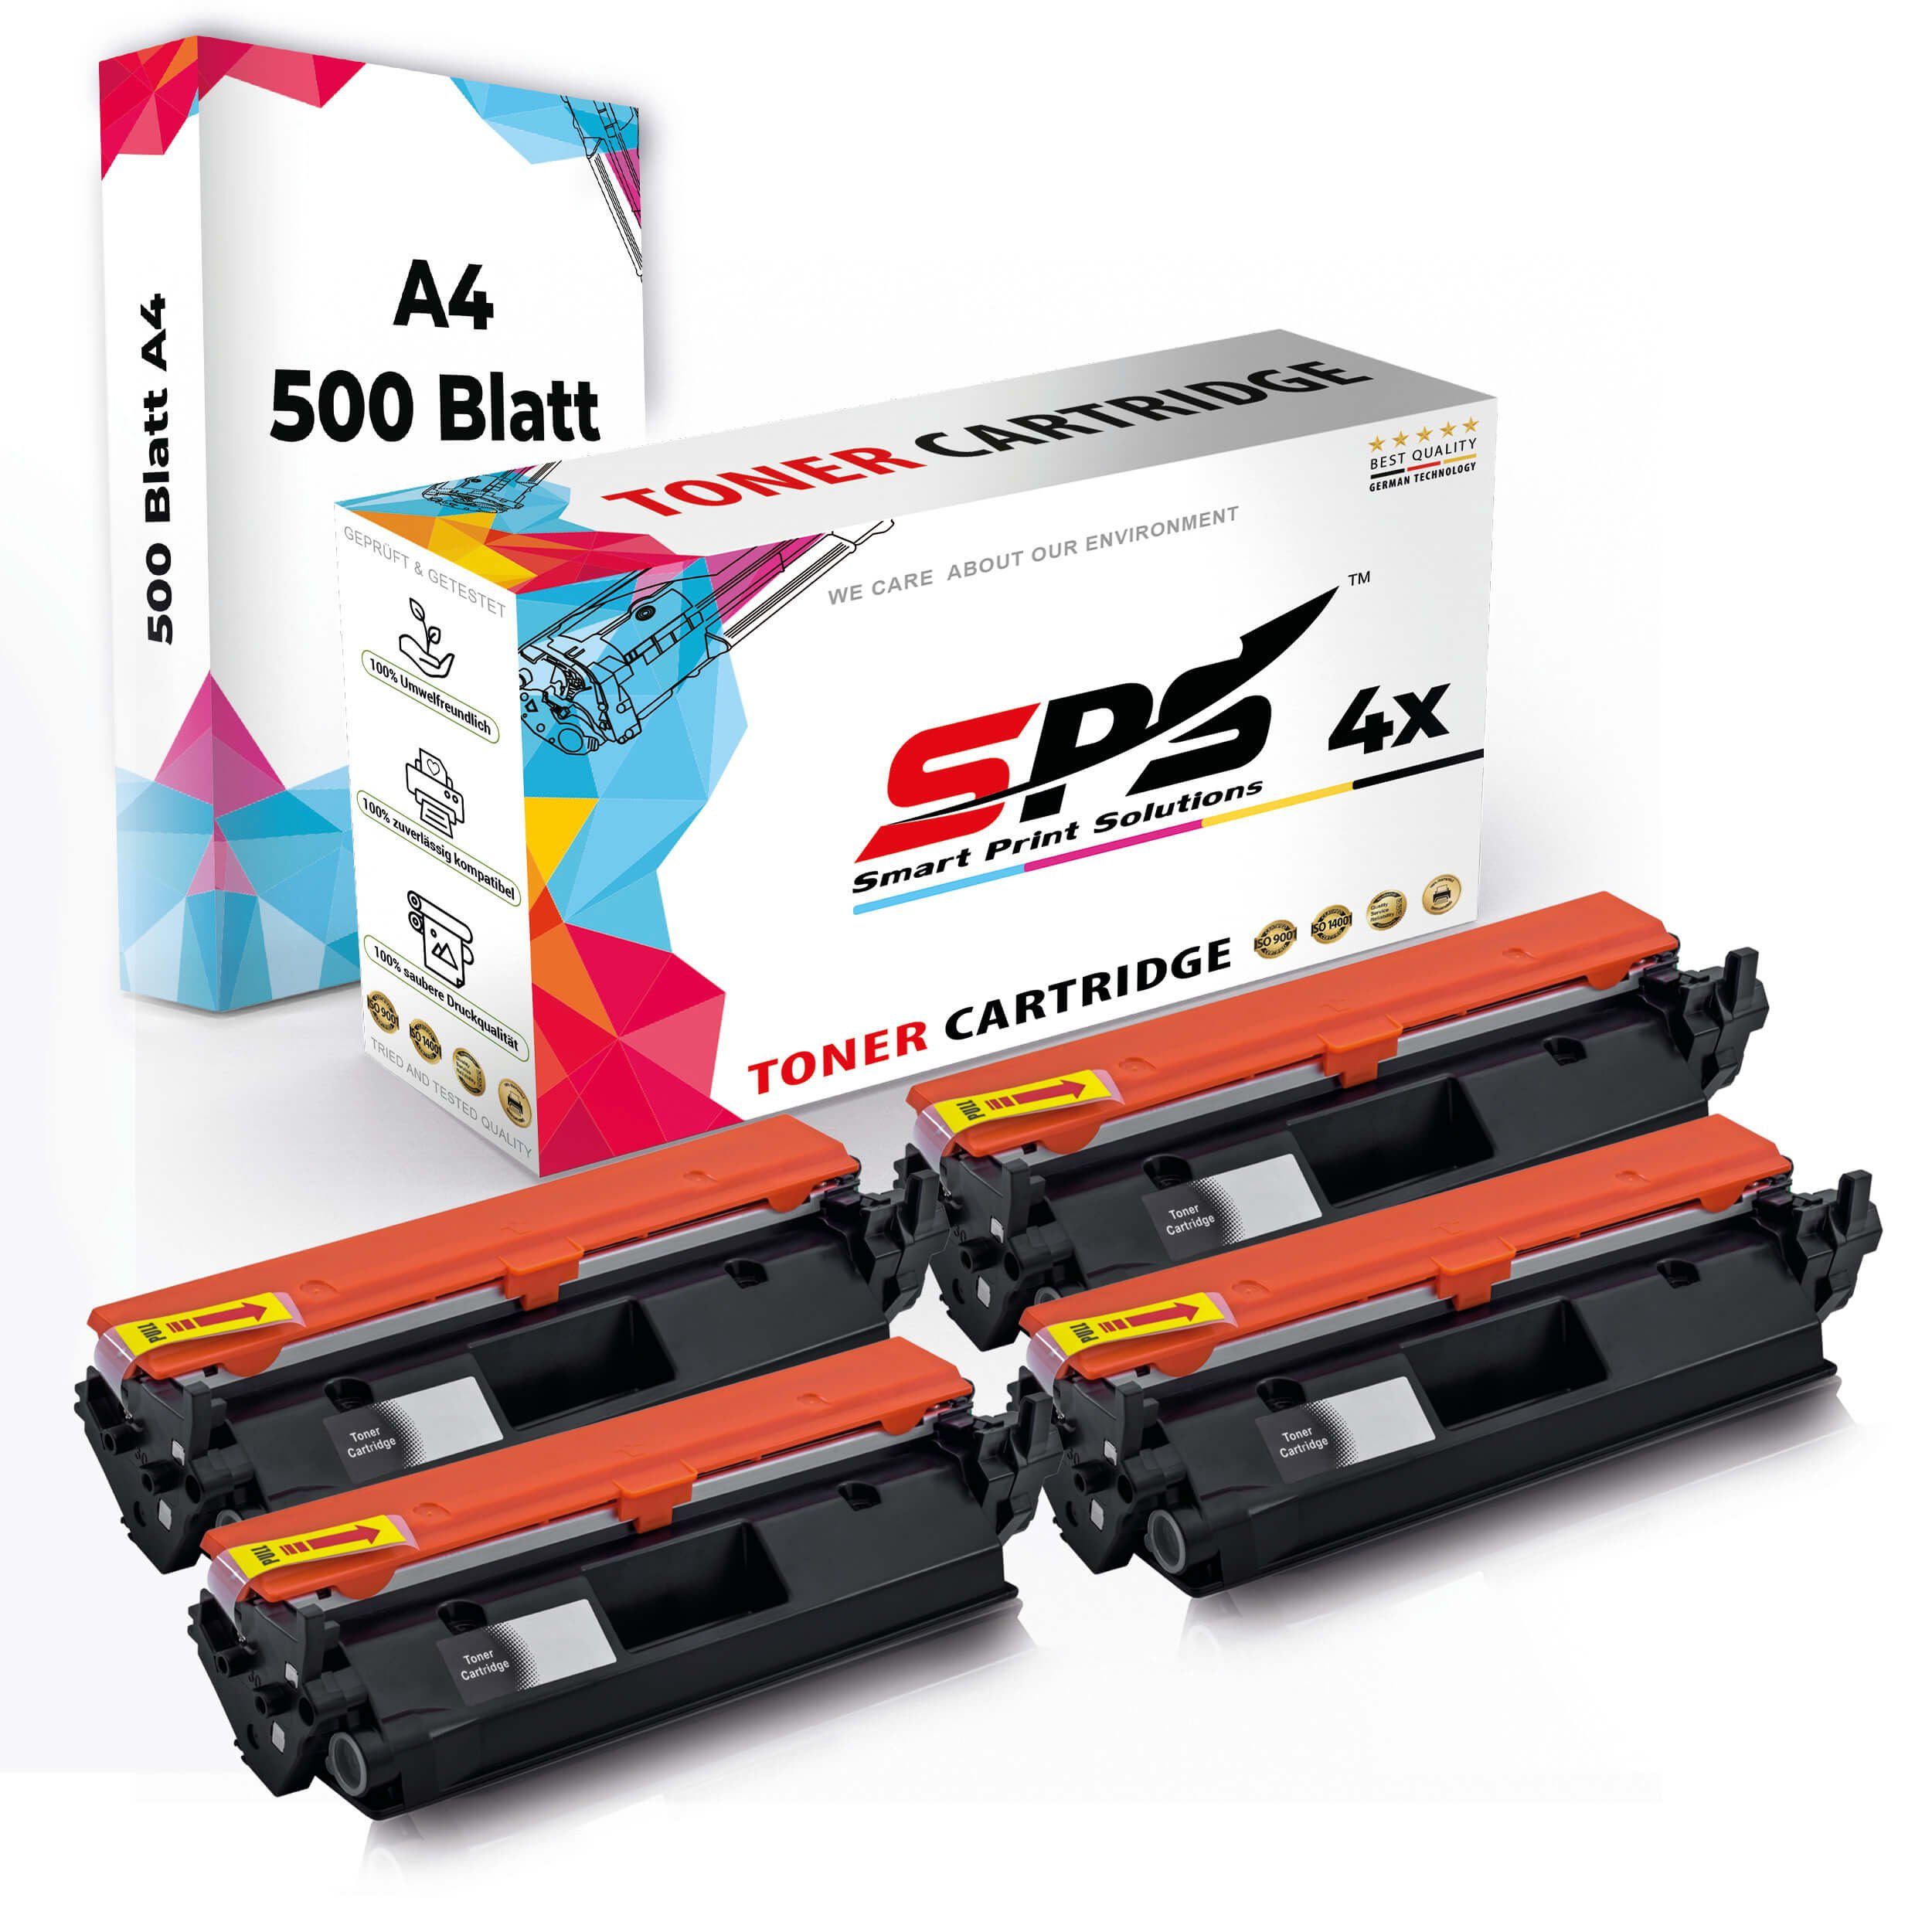 SPS Tonerkartusche Druckerpapier 4x Kompatibel, Multipack + Pack, Set (4er A4 A4 Toner,1x Druckerpapier) 4x